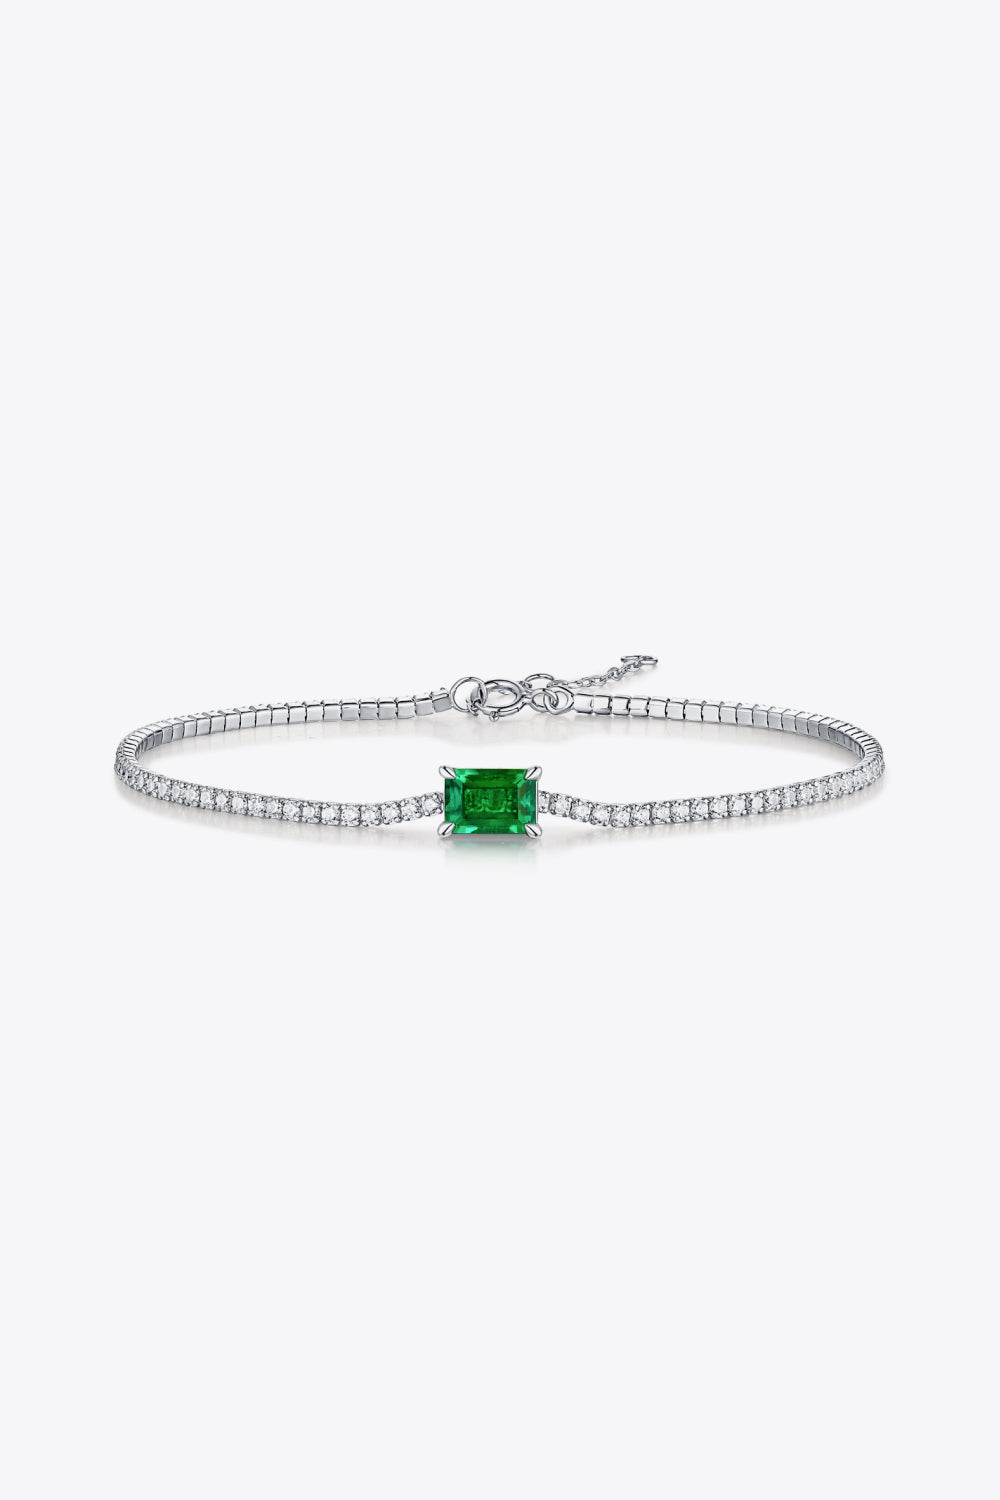 Adored 1 Carat Lab-Grown Emerald Bracelet - Green / One Size - Women’s Jewelry - Bracelets - 4 - 2024